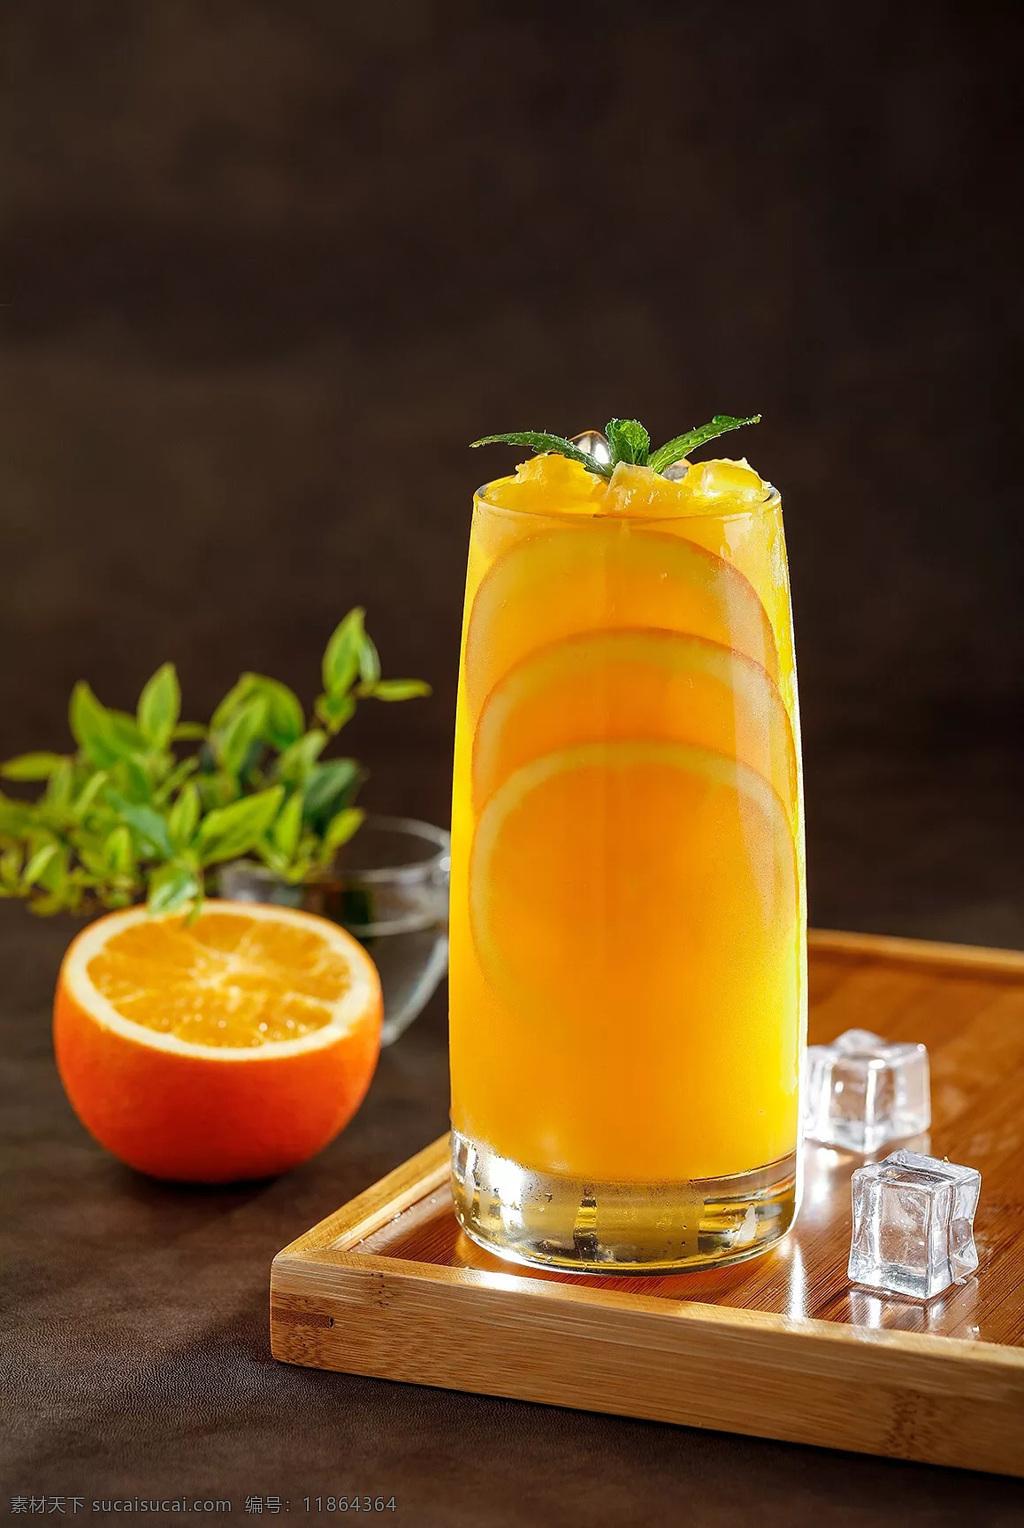 橙子汁图片 新鲜 水果 果汁 橙子 鲜榨 橙汁 餐饮美食 饮料酒水